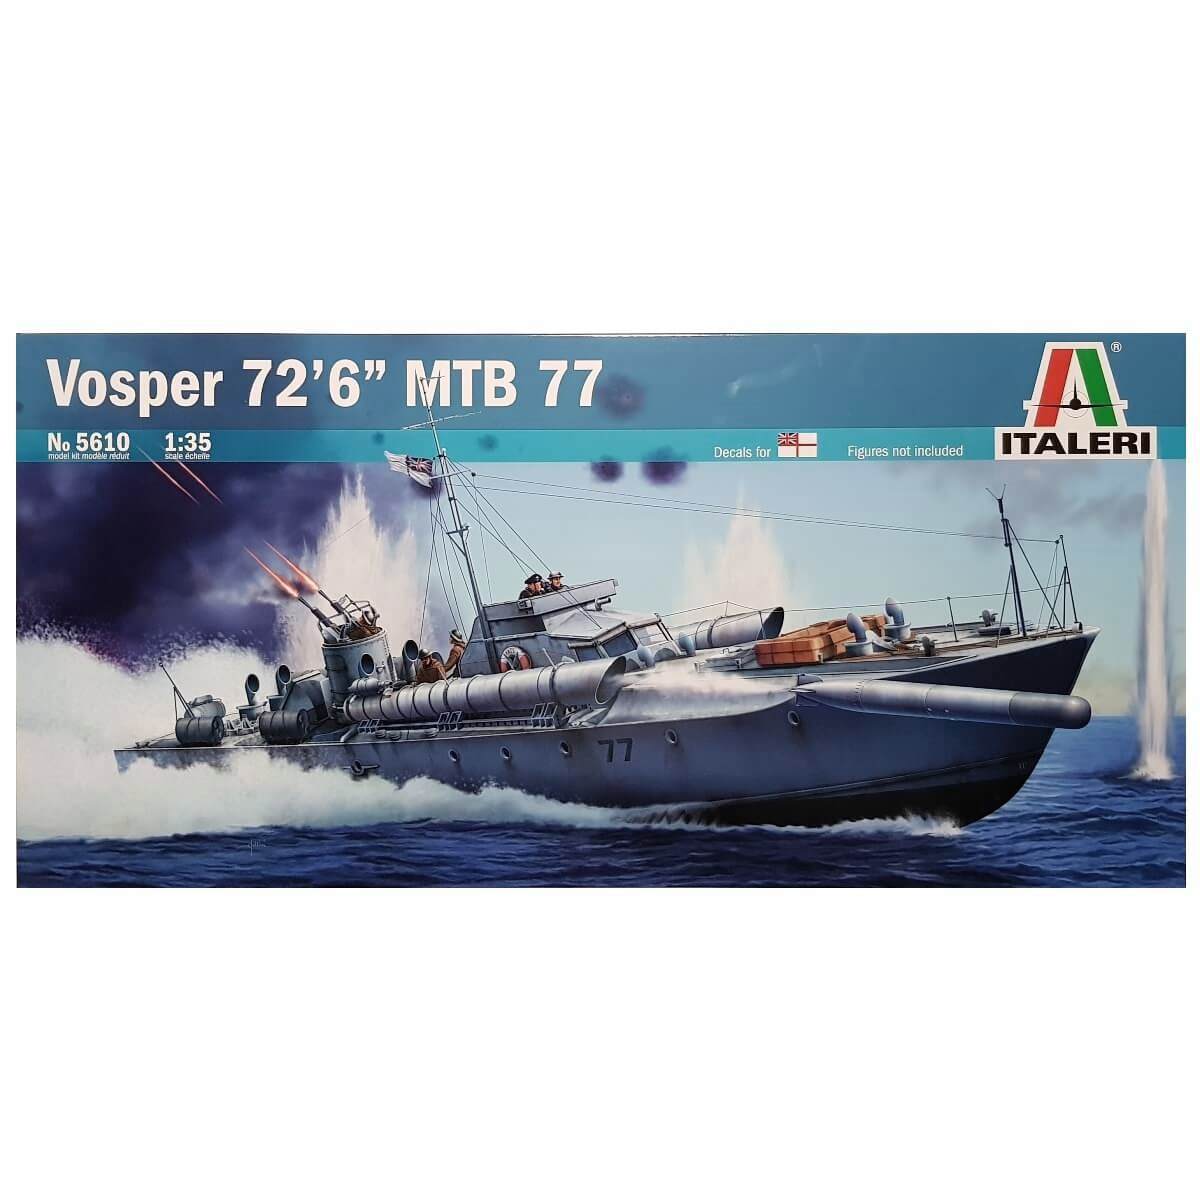 1:35 Royal Navy VOSPER 72’6” Torpedo Boat MTB 77 - ITALERI